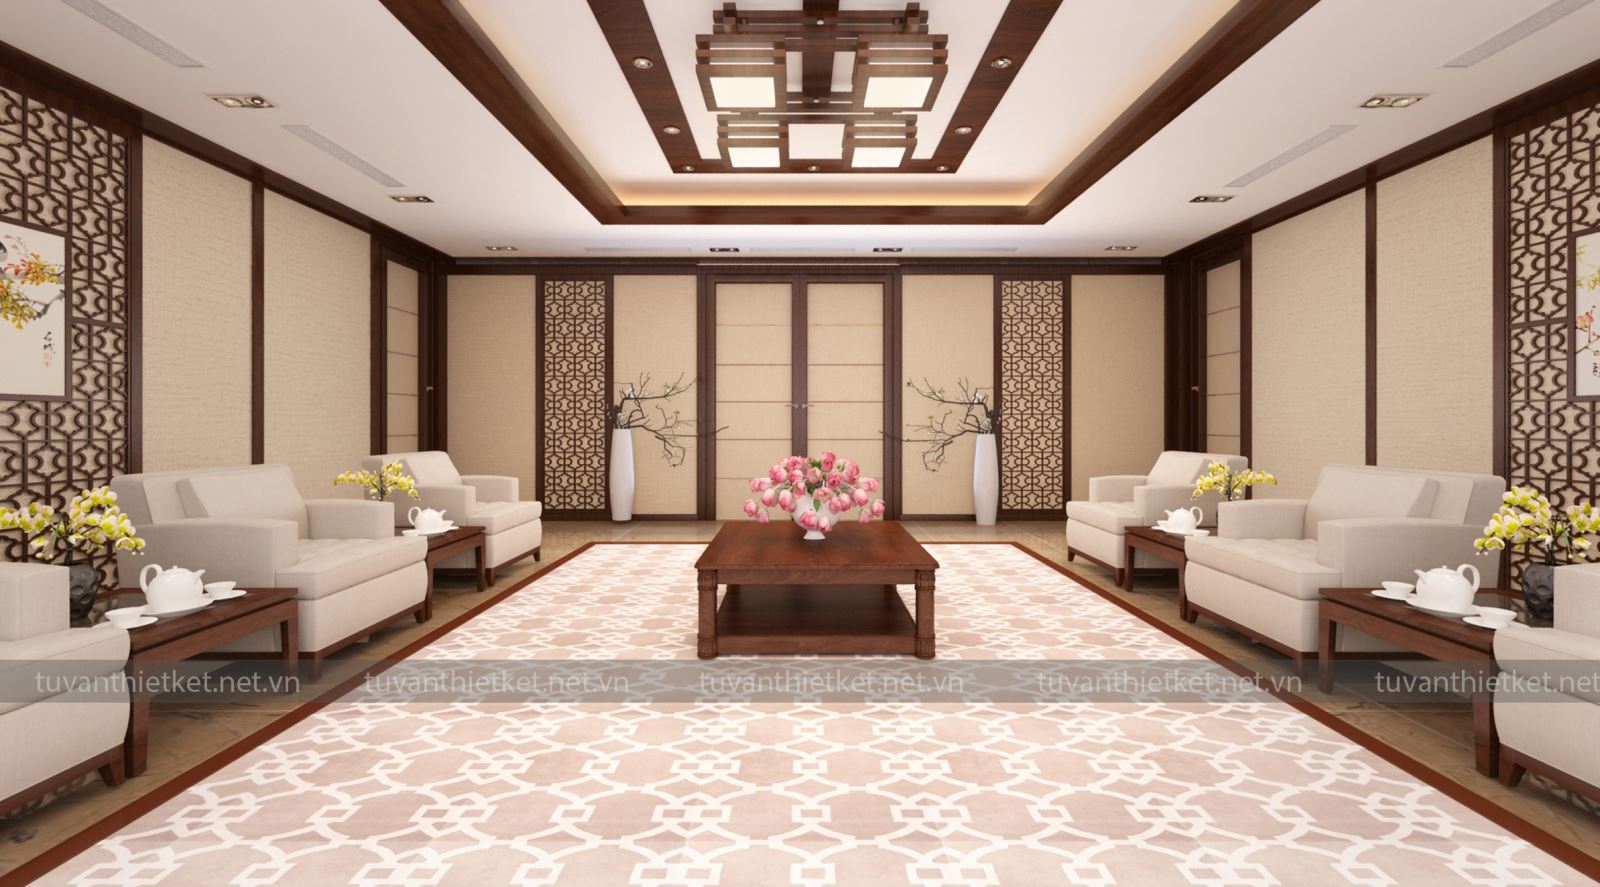 Thiết kế nội thất phòng khánh tiết với phong cách lịch sự1